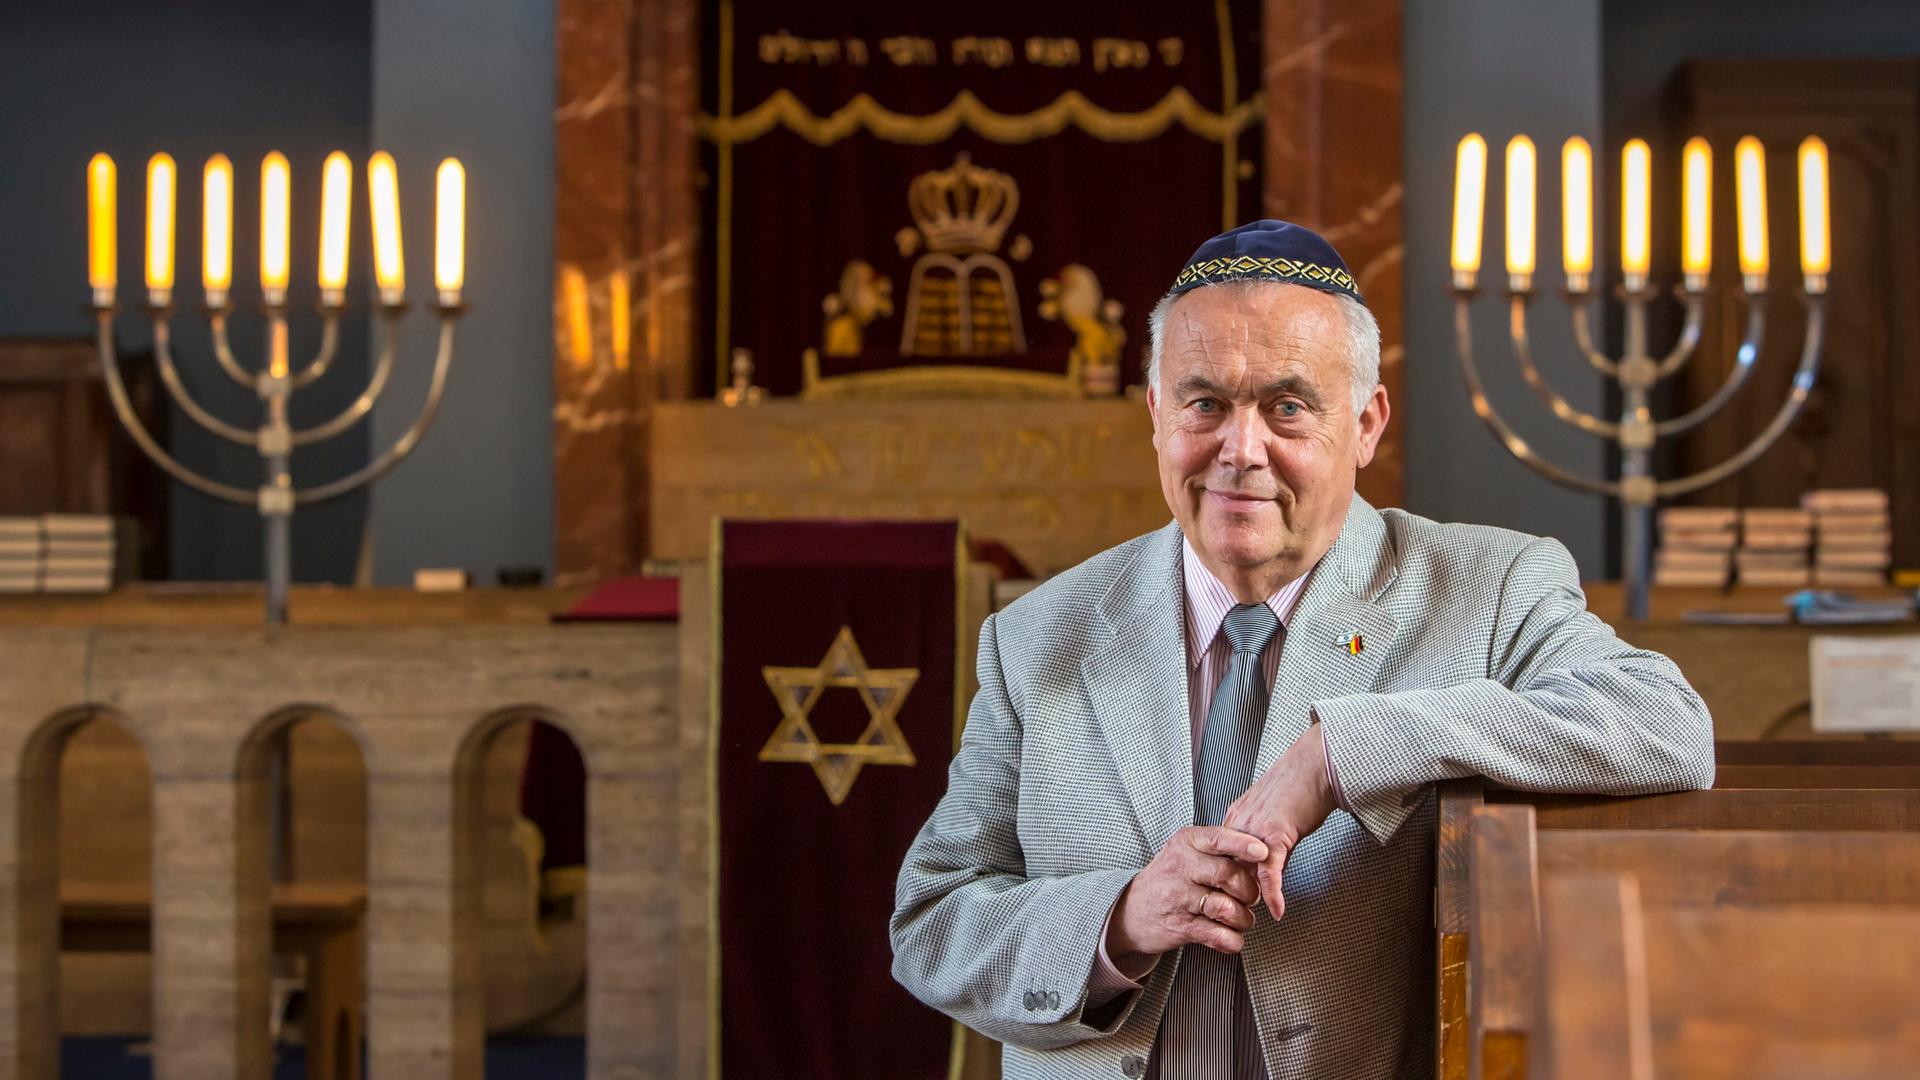 Reinhard Schramm, Vorsitzender der Jüdischen Landesgemeinde Thüringen, in der Synagoge in Erfurt. Schramm, der eine blaue Kippa trägt, hat seinen Arm und die Lehne einer Bank gelegt. Im Hintergrund spenden jüdische Leuchter Licht.